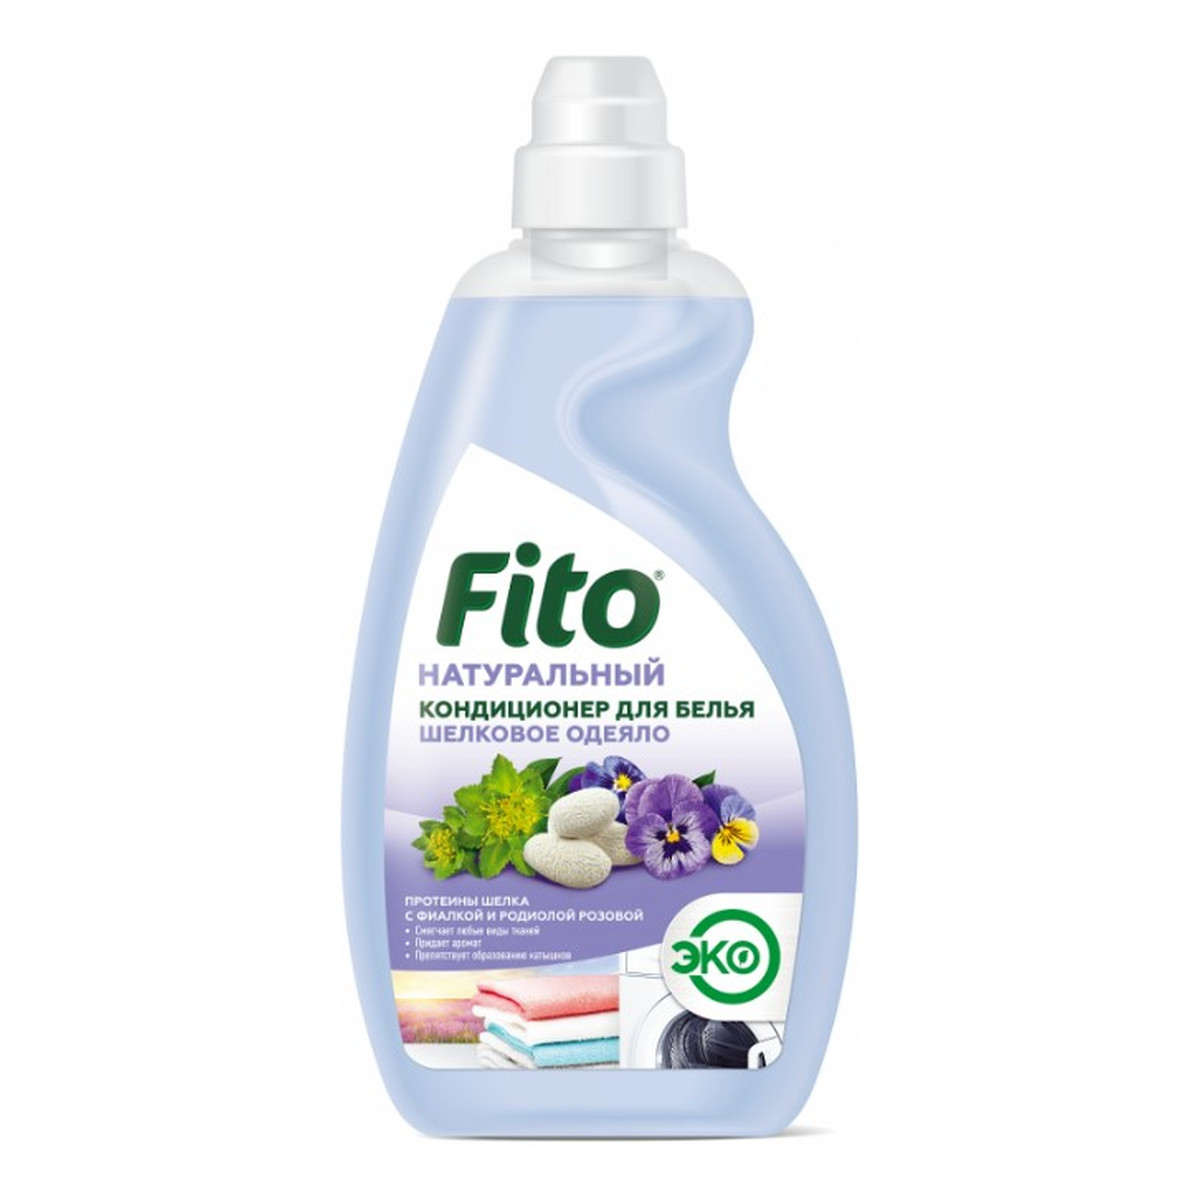 Fitokosmetik Fito Naturalny płyn do zmiękczania tkanin Jedwabny delikatność 980ml